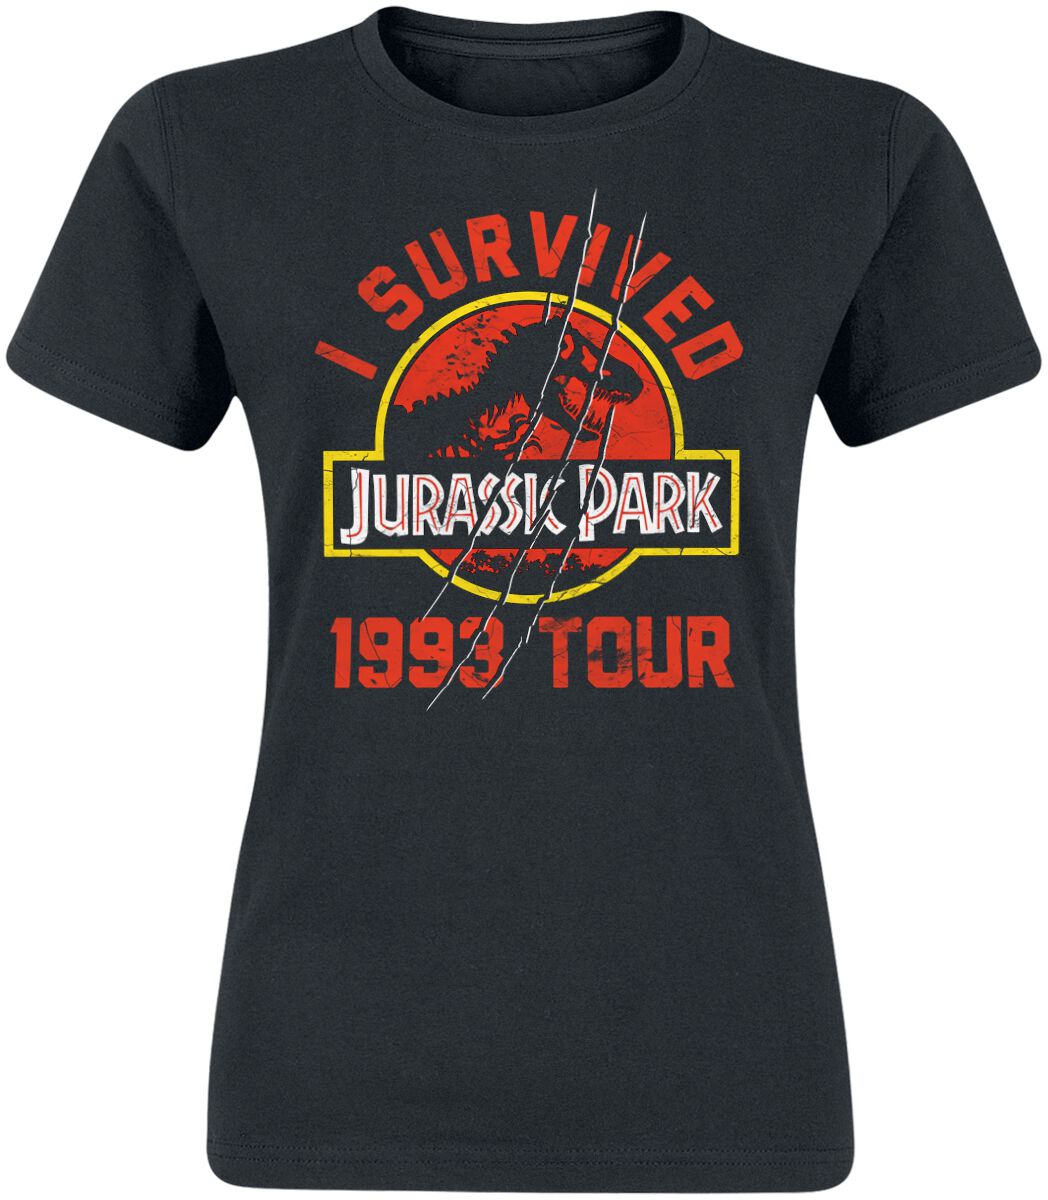 Jurassic Park 1993 - Tour T-Shirt schwarz in S